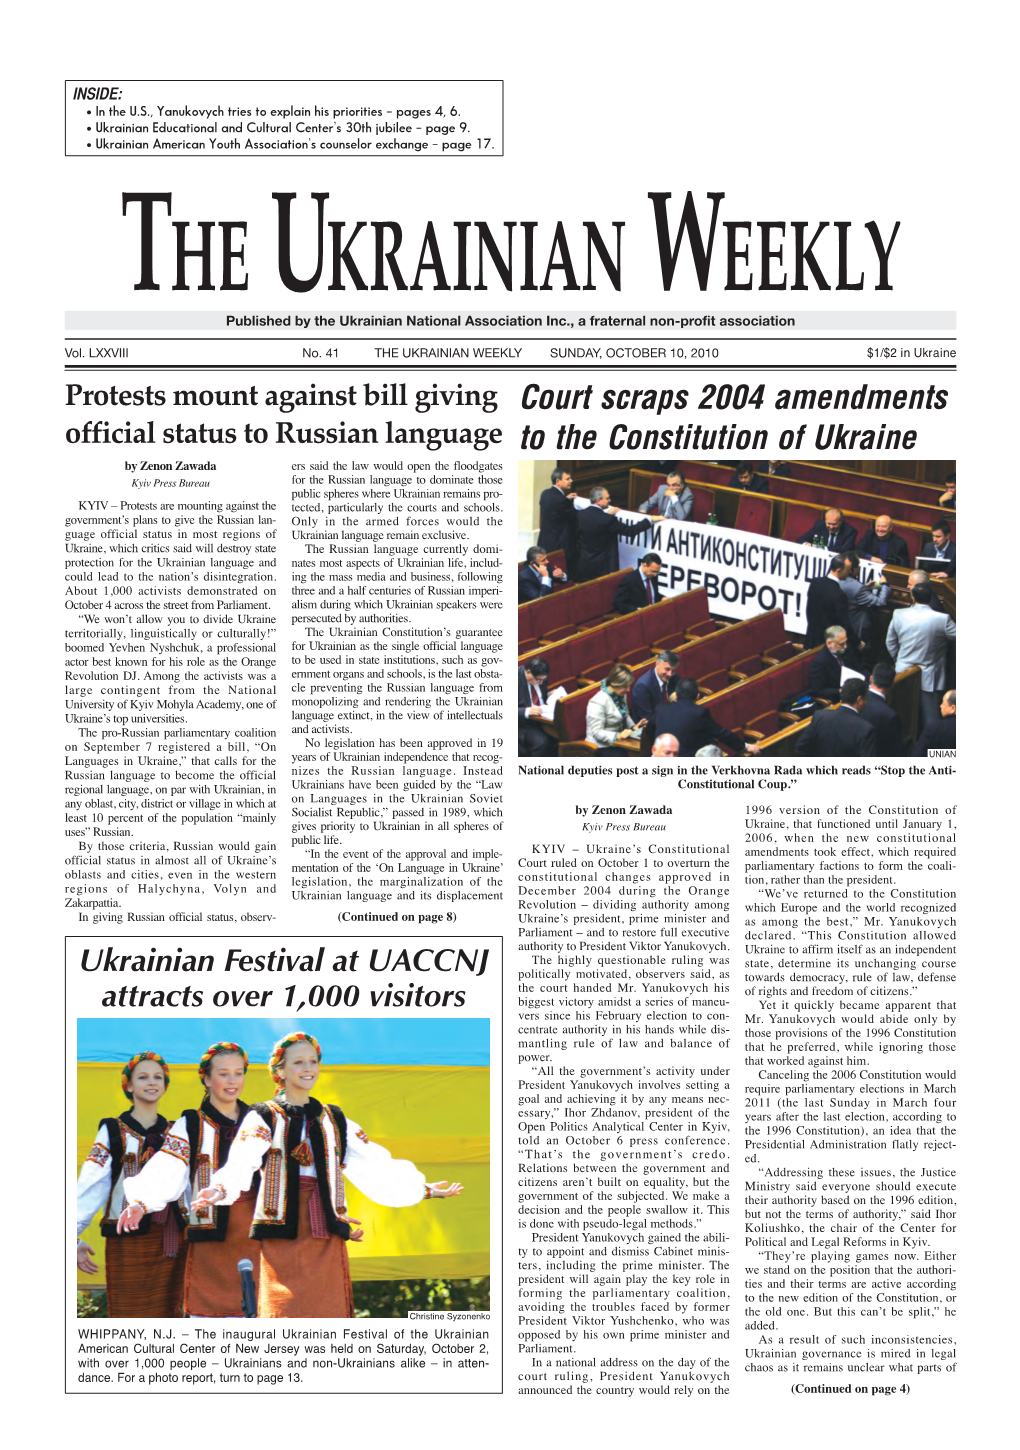 Court Scraps 2004 Amendments to the Constitution of Ukraine